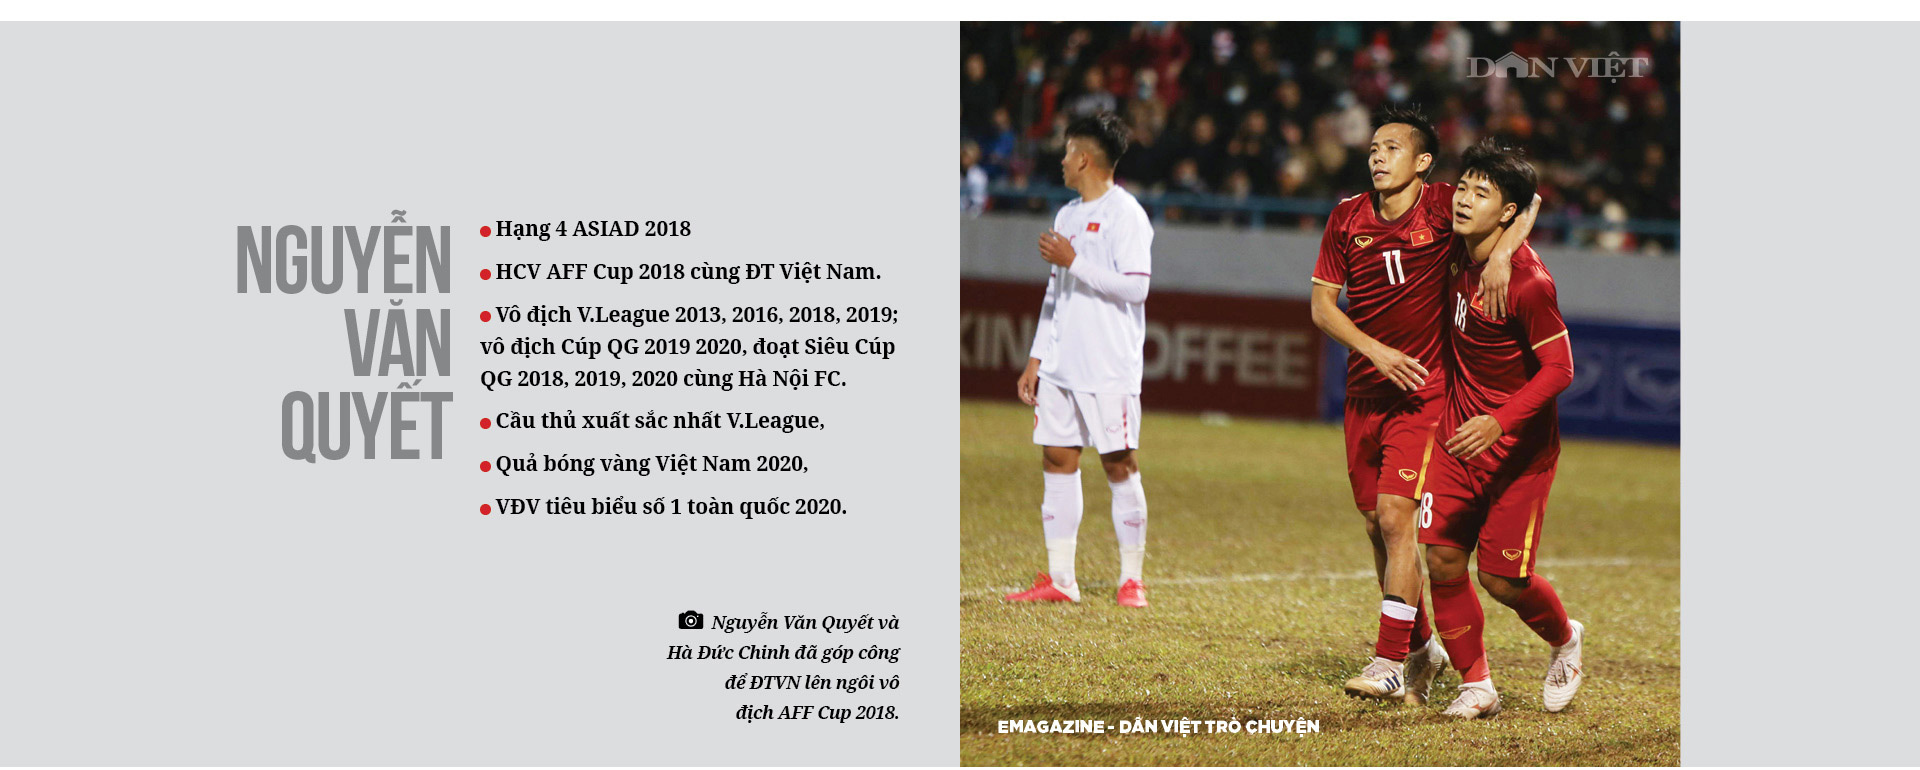 Quả bóng vàng Việt Nam 2020 Nguyễn Văn Quyết – “Vàng mười” không sợ lửa! - Ảnh 10.